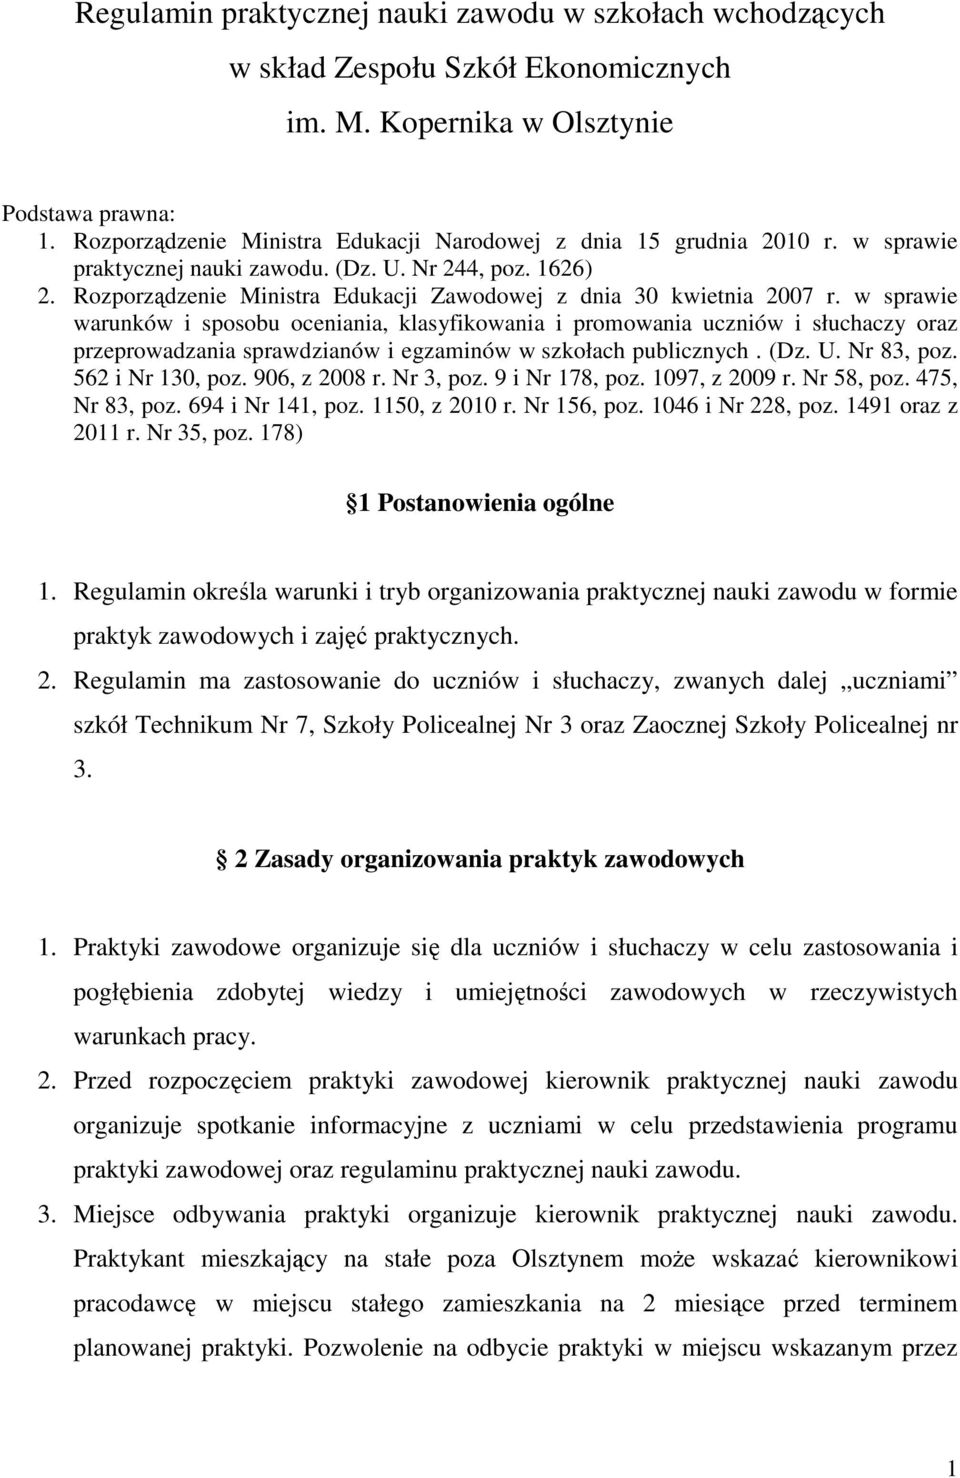 Rozporządzenie Ministra Edukacji Zawodowej z dnia 30 kwietnia 2007 r.